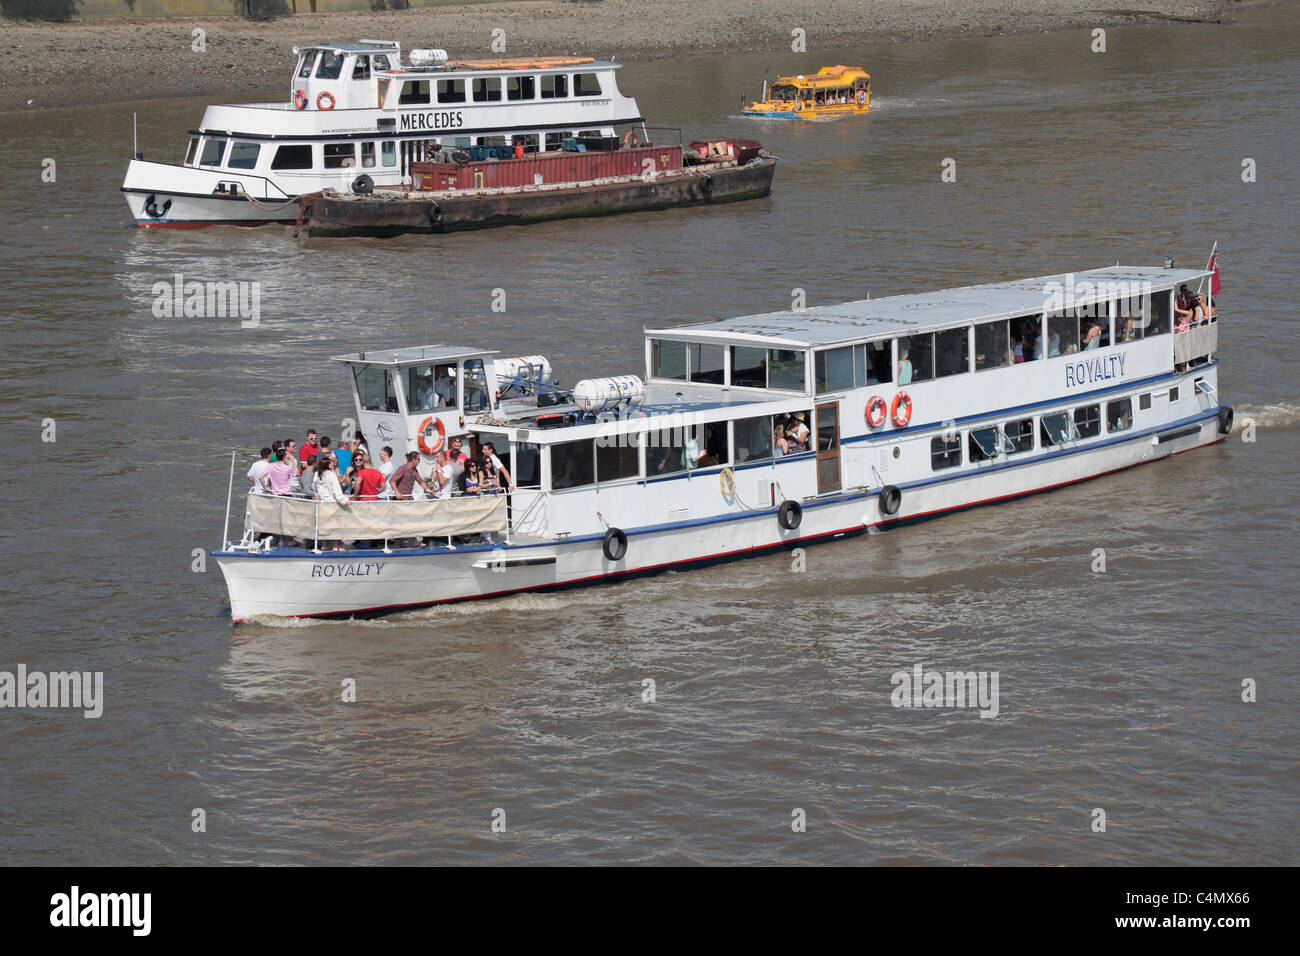 L'imbarcazione da diporto "royalty" sul fiume Tamigi, Westminster, London, Regno Unito (con un giallo Duk-W imbarcazione turistica dietro) Foto Stock